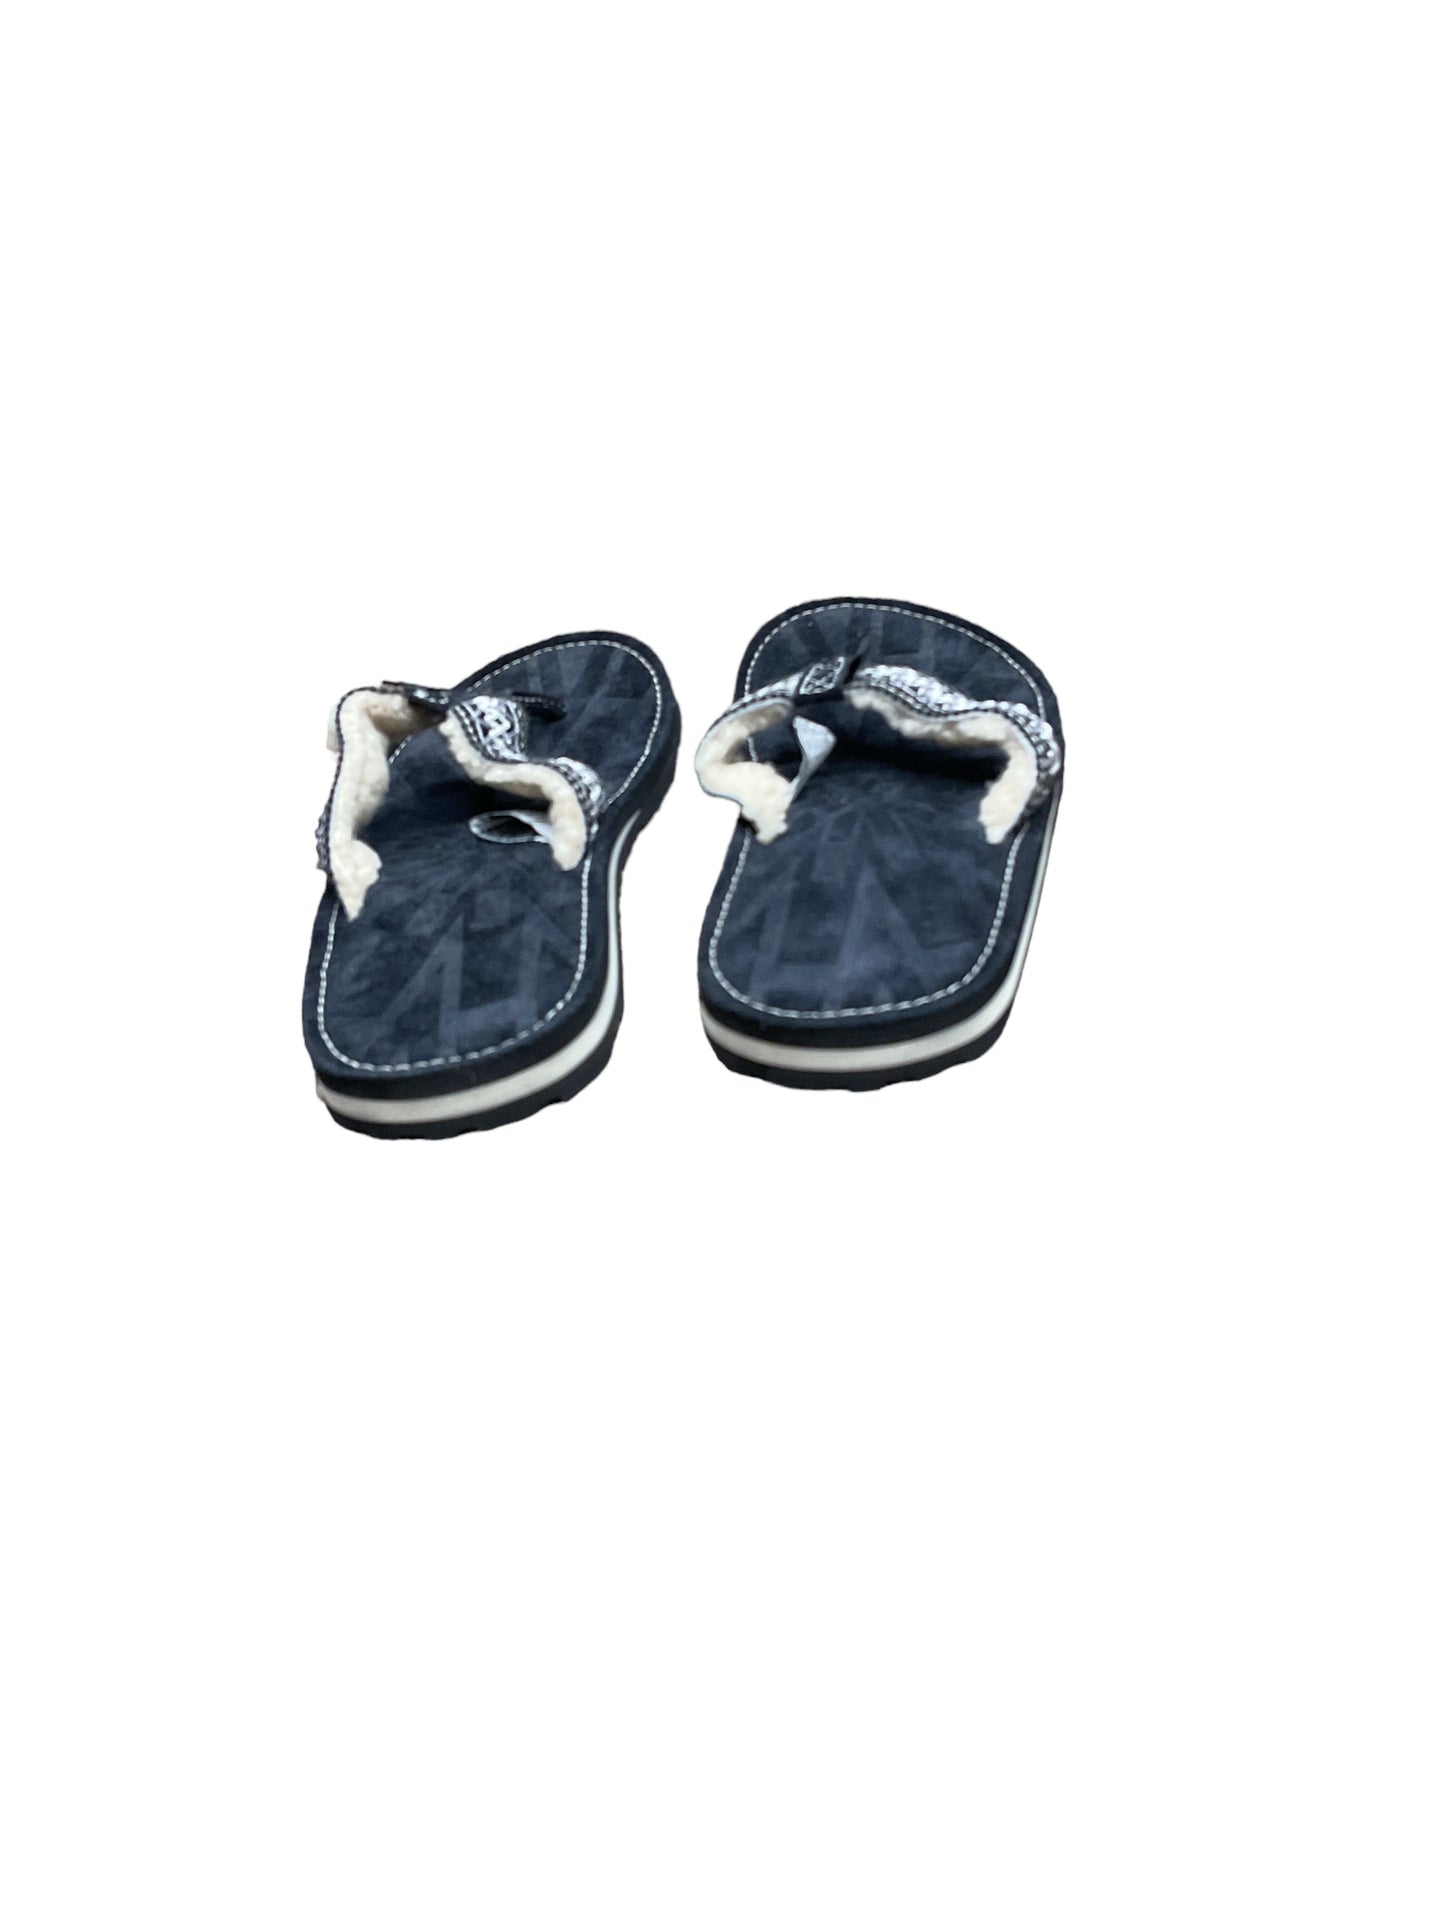 Sandals Flip Flops By Ugg  Size: 6